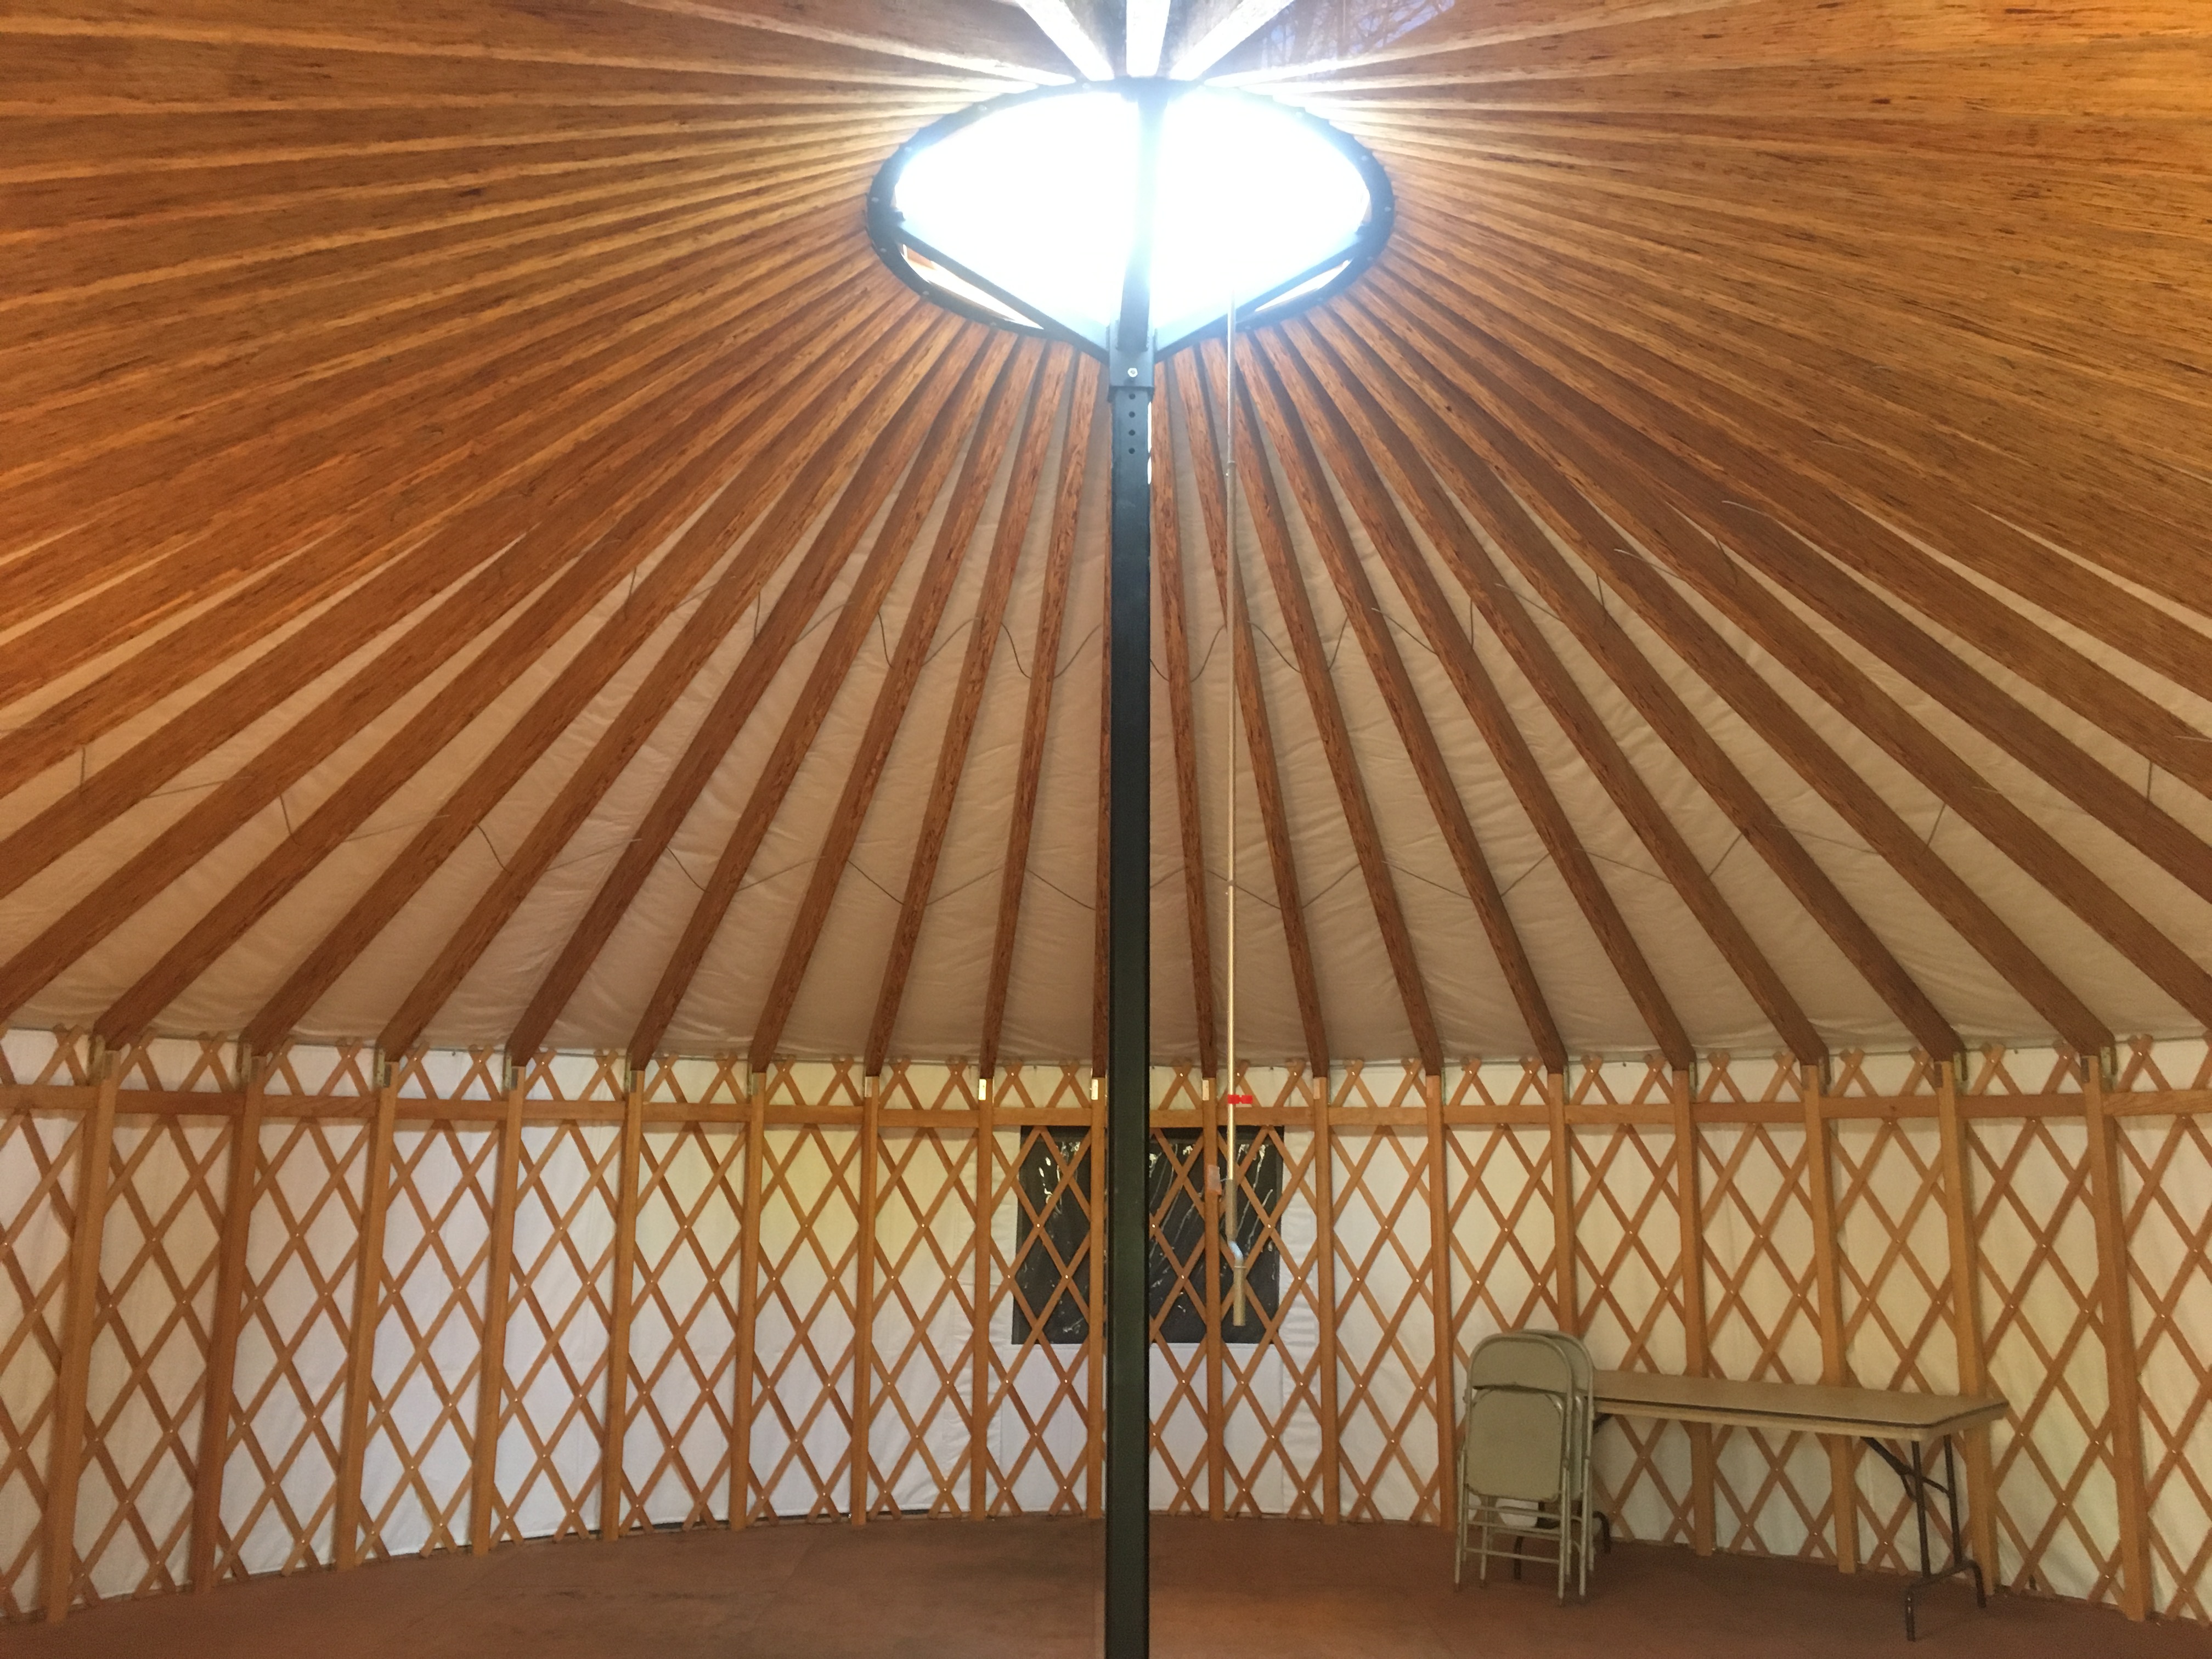 Inside the yurt